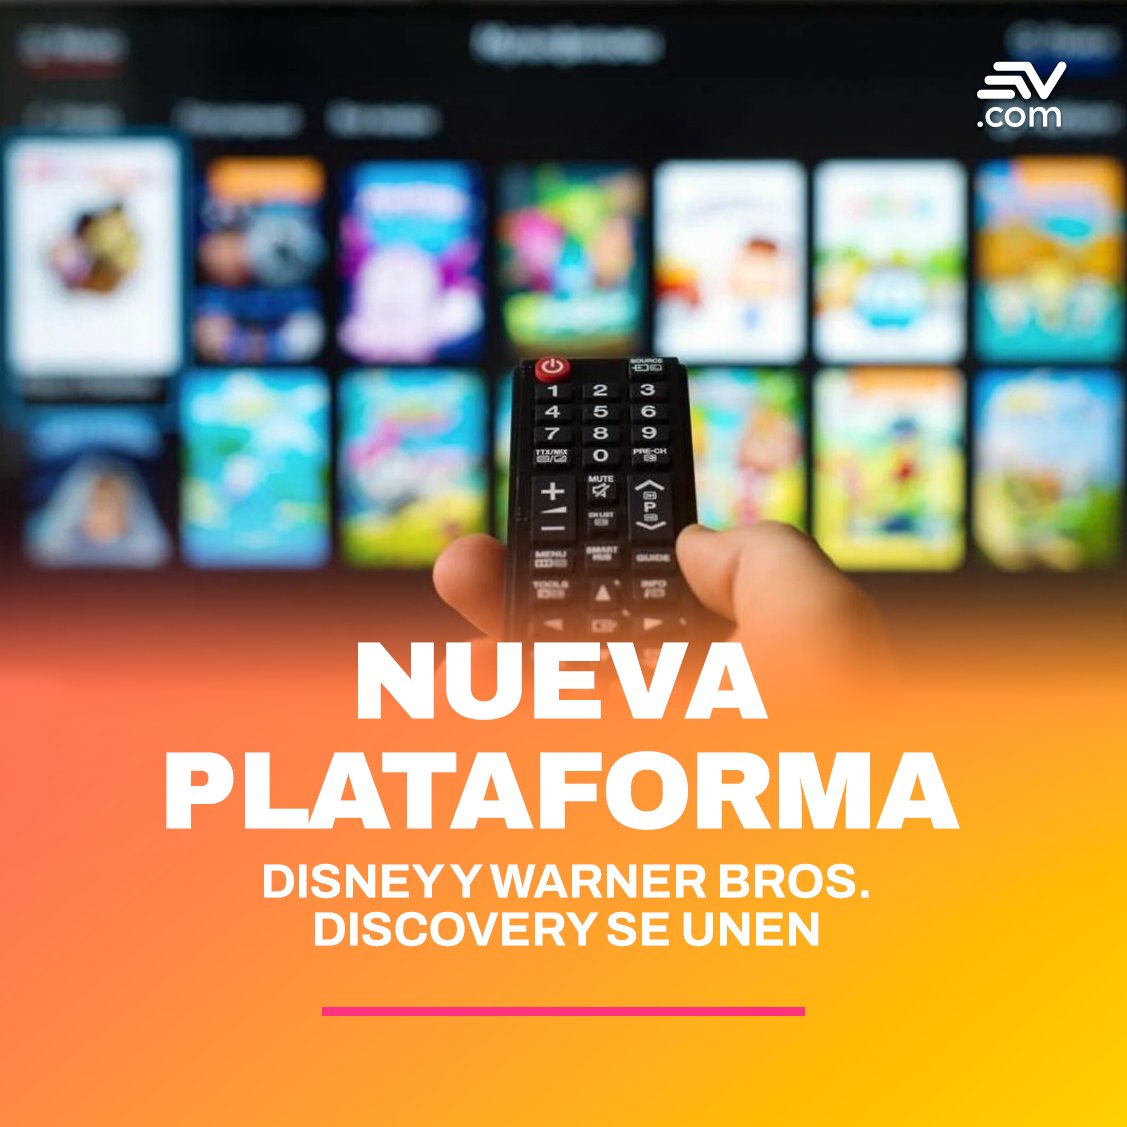 La alianza incluirá plataformas como Disney+, Hulu y Max 🖥, ofreciendo una amplia gama de opciones ➡ bit.ly/3yeI8eJ